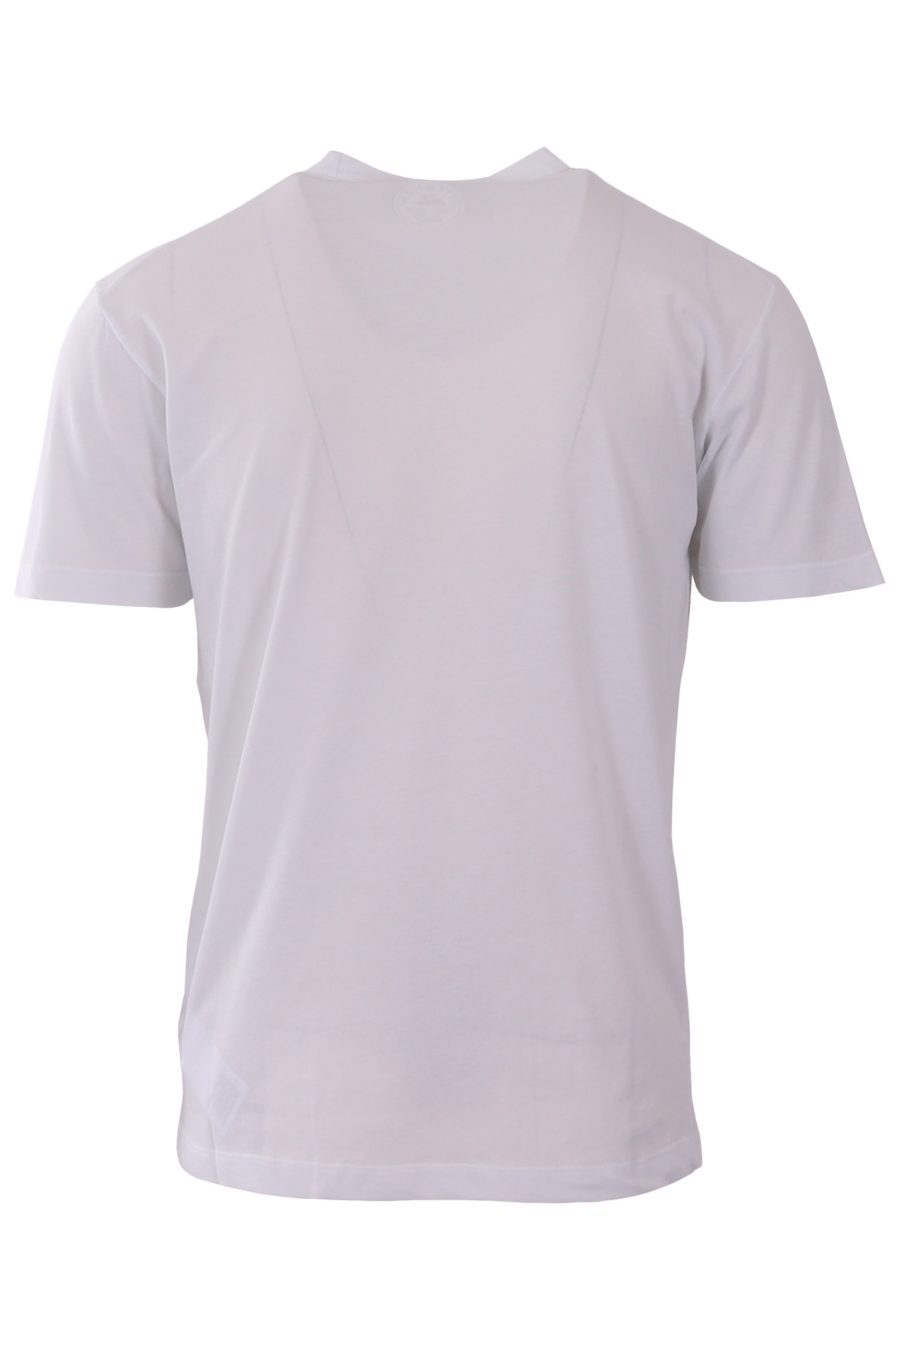 Camiseta Dsquared2 blanca con logo milano - 807b199610179efd9377f4366288a555e8301982